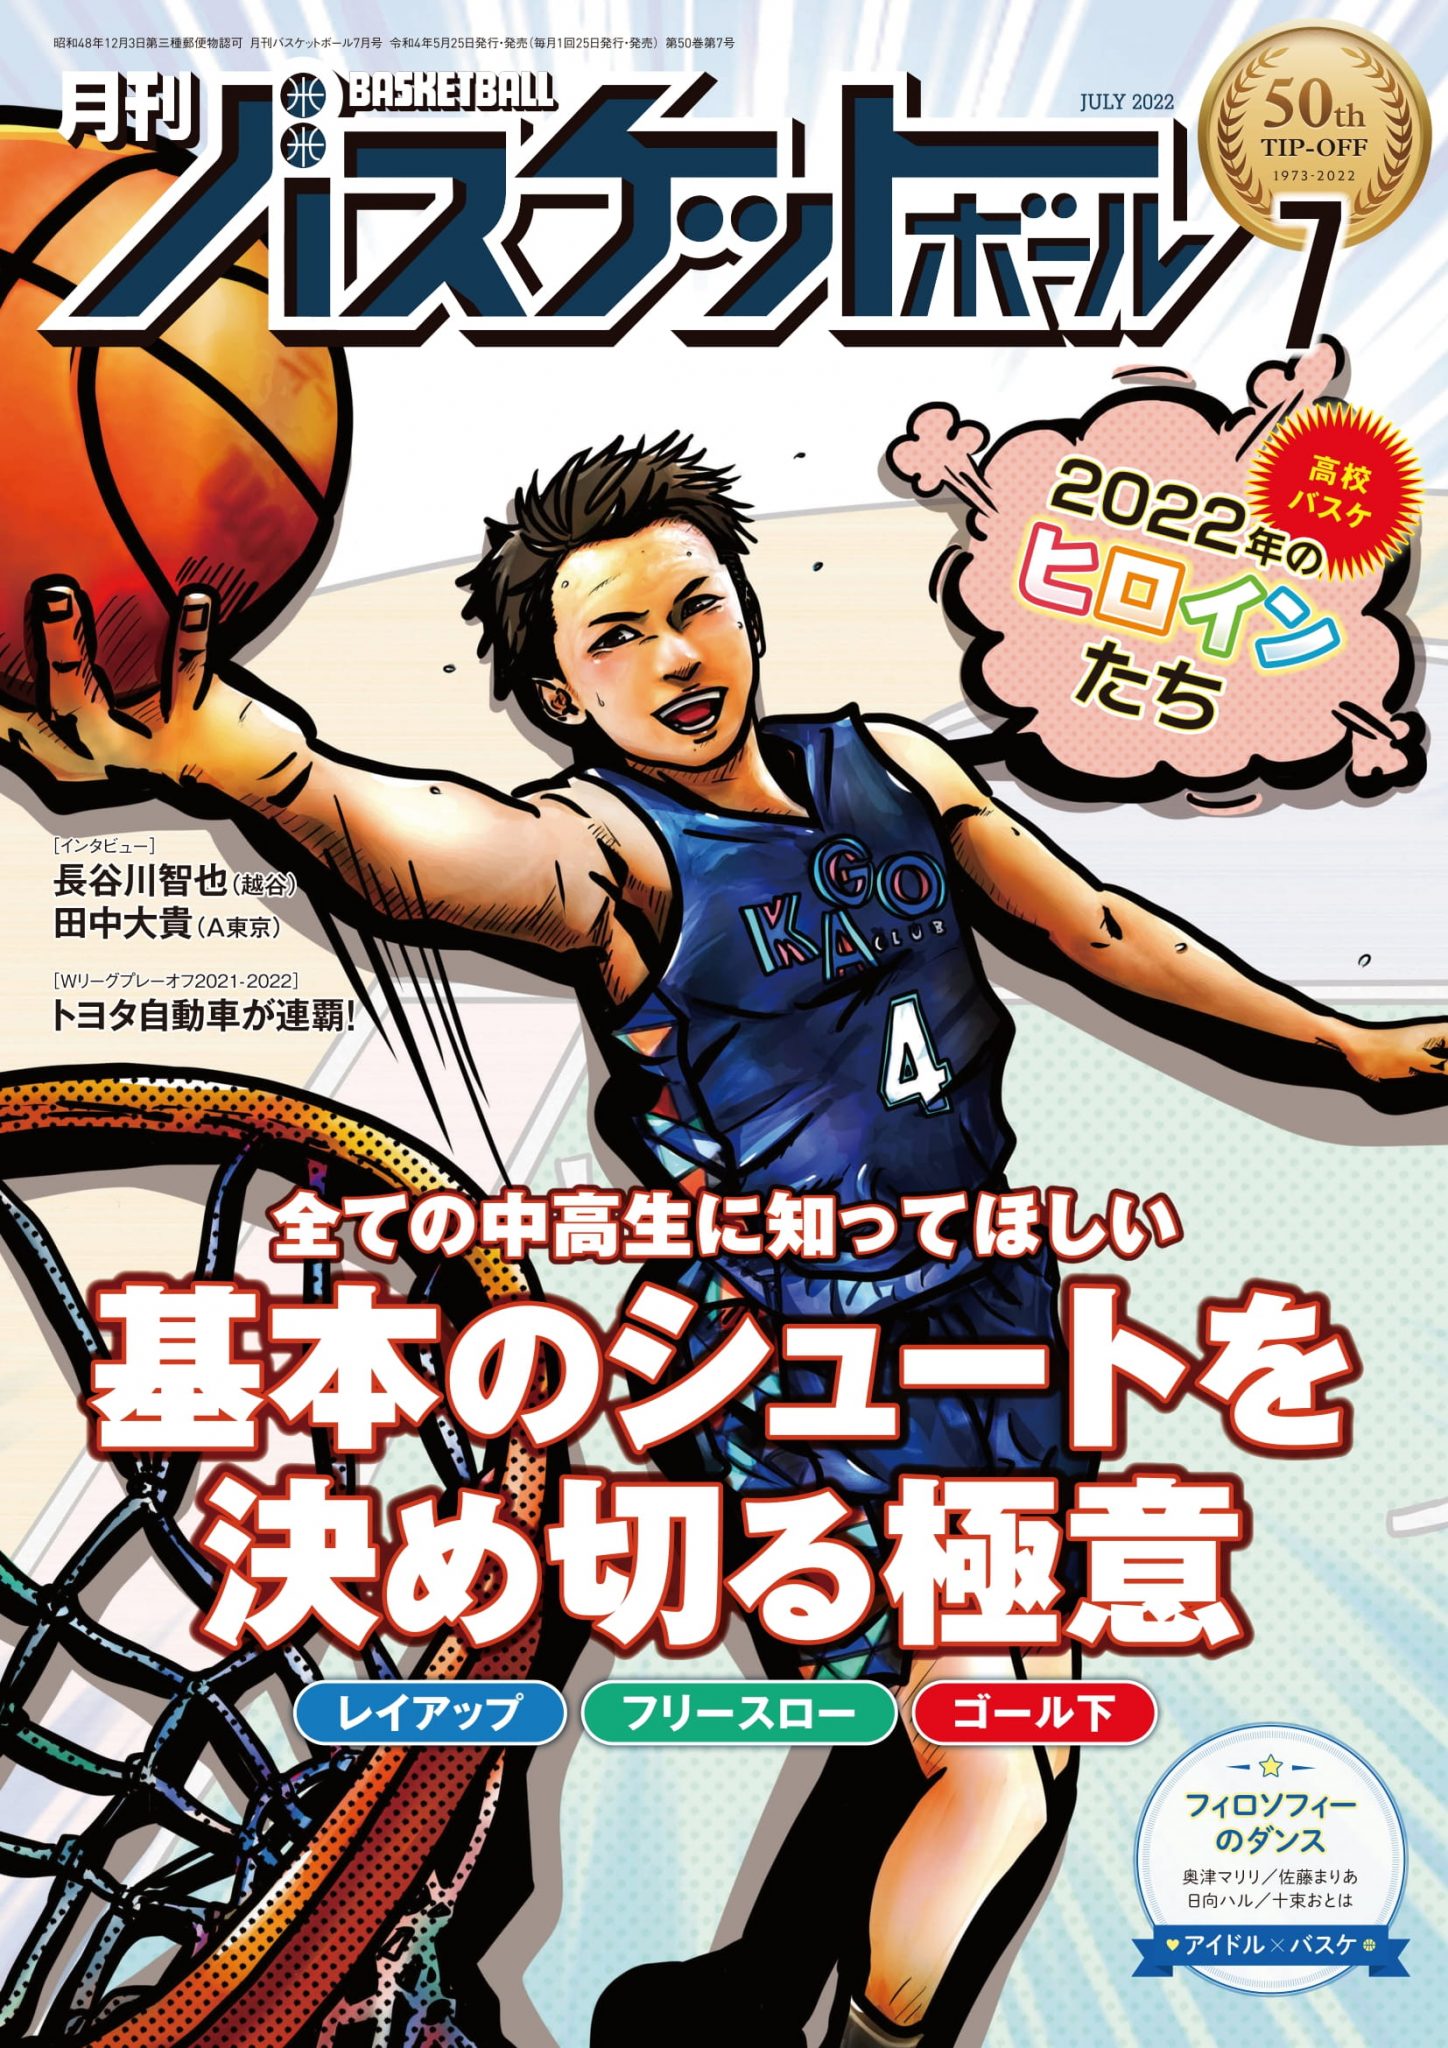 月刊バスケットボール 1995年1月～12月号 - バスケットボール